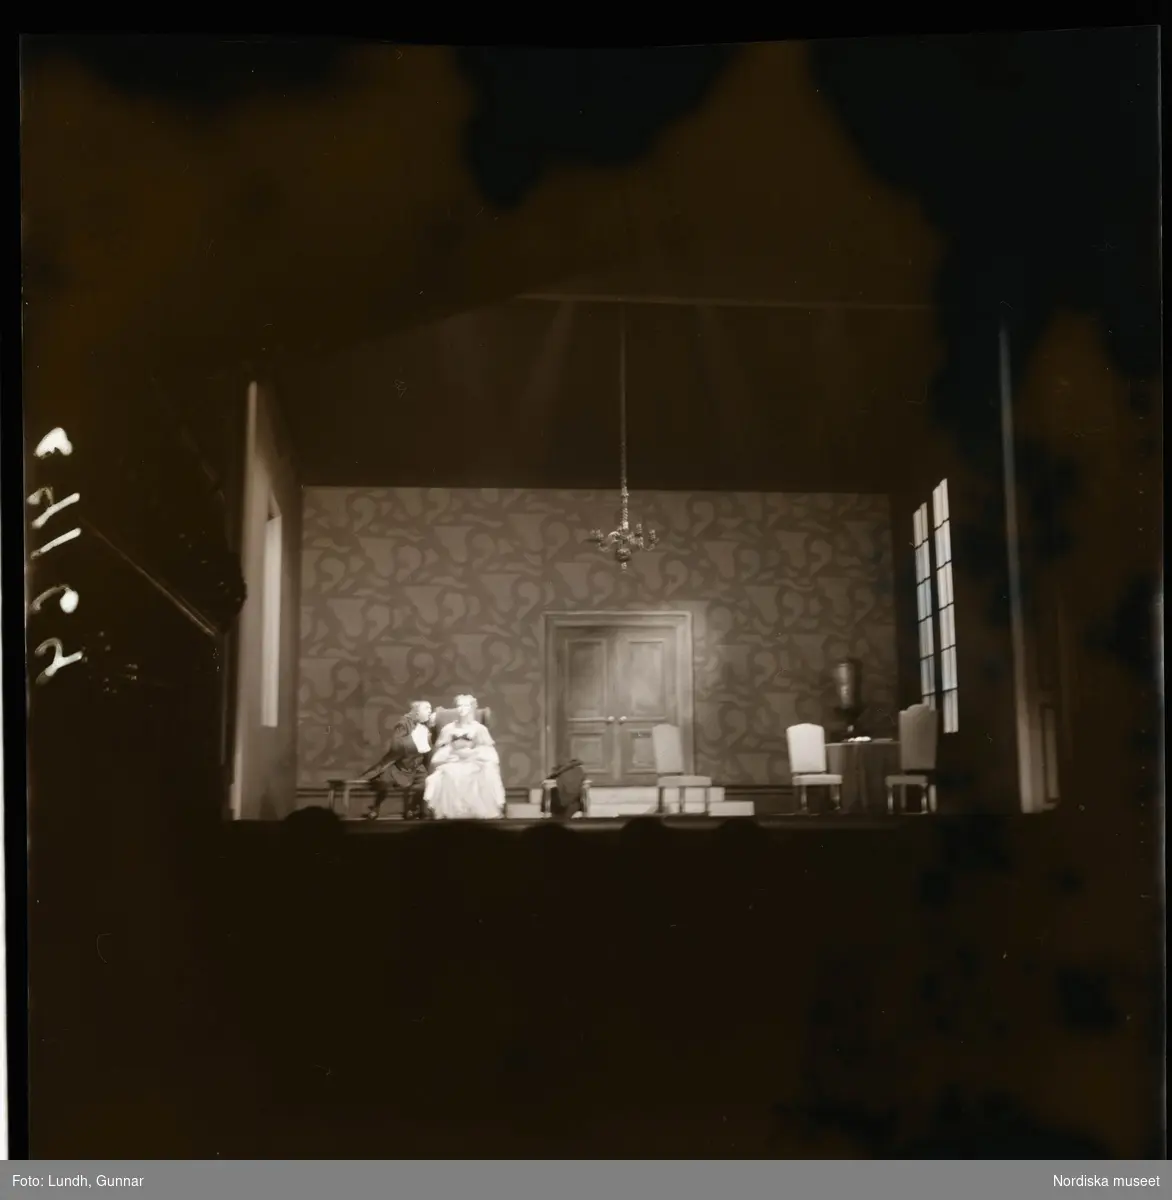 1950. Paris. Två personer på en teaterscen